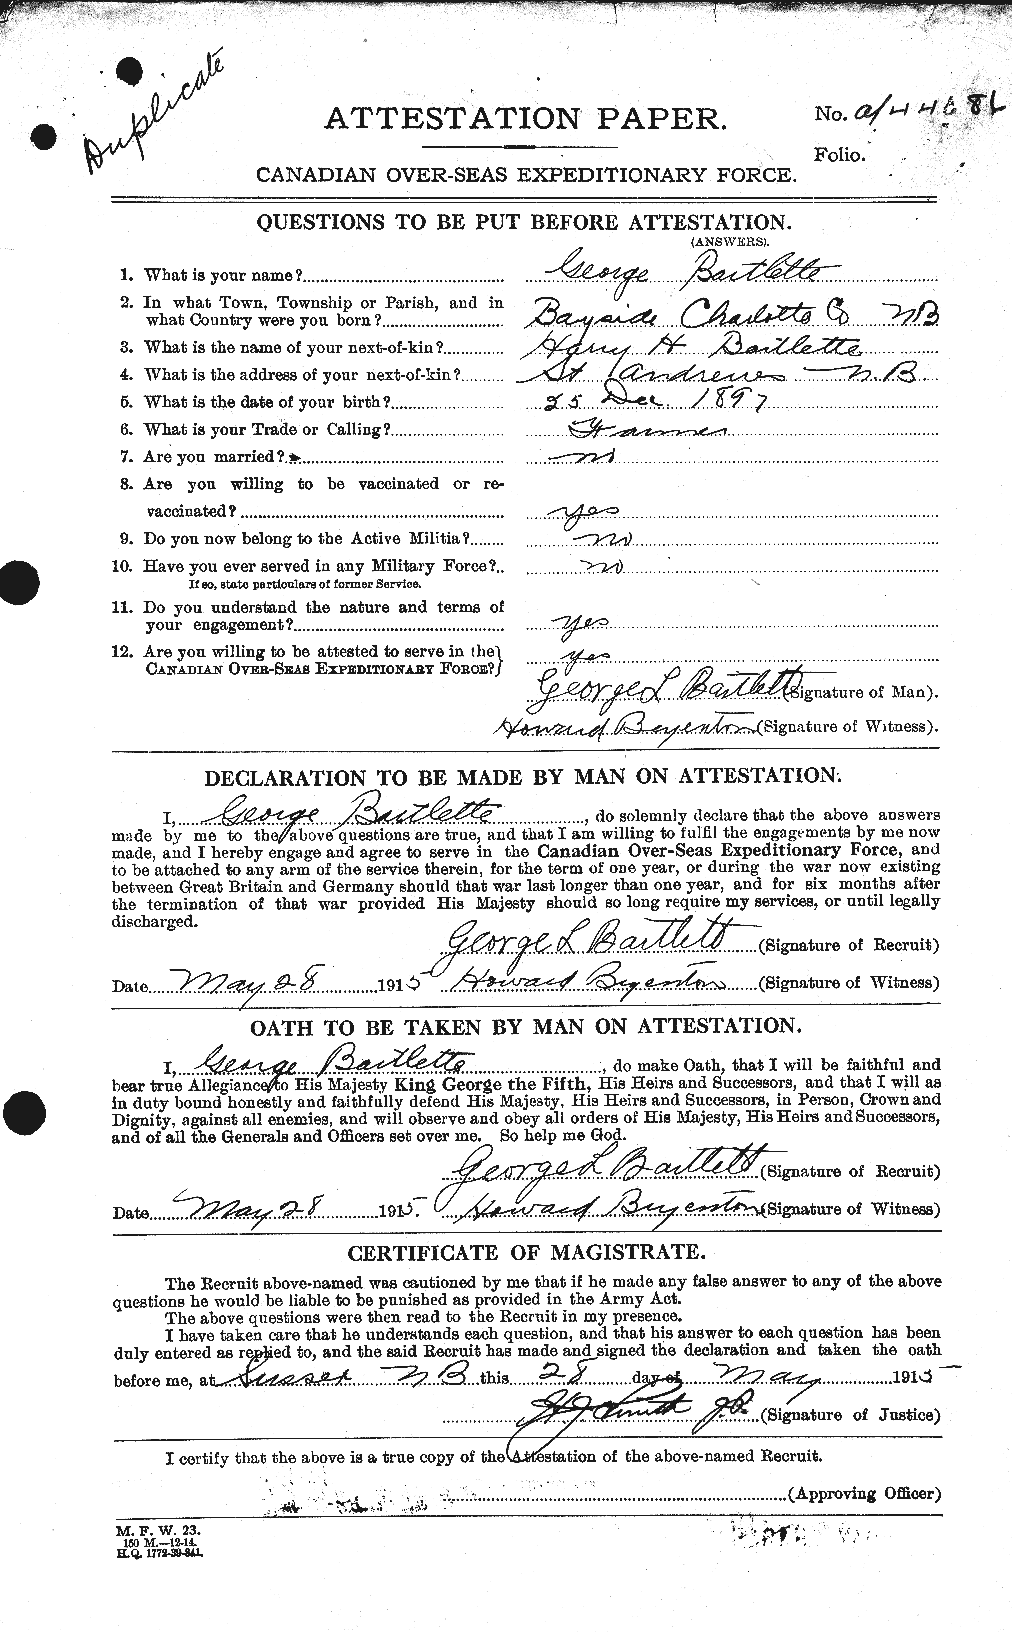 Dossiers du Personnel de la Première Guerre mondiale - CEC 229367a